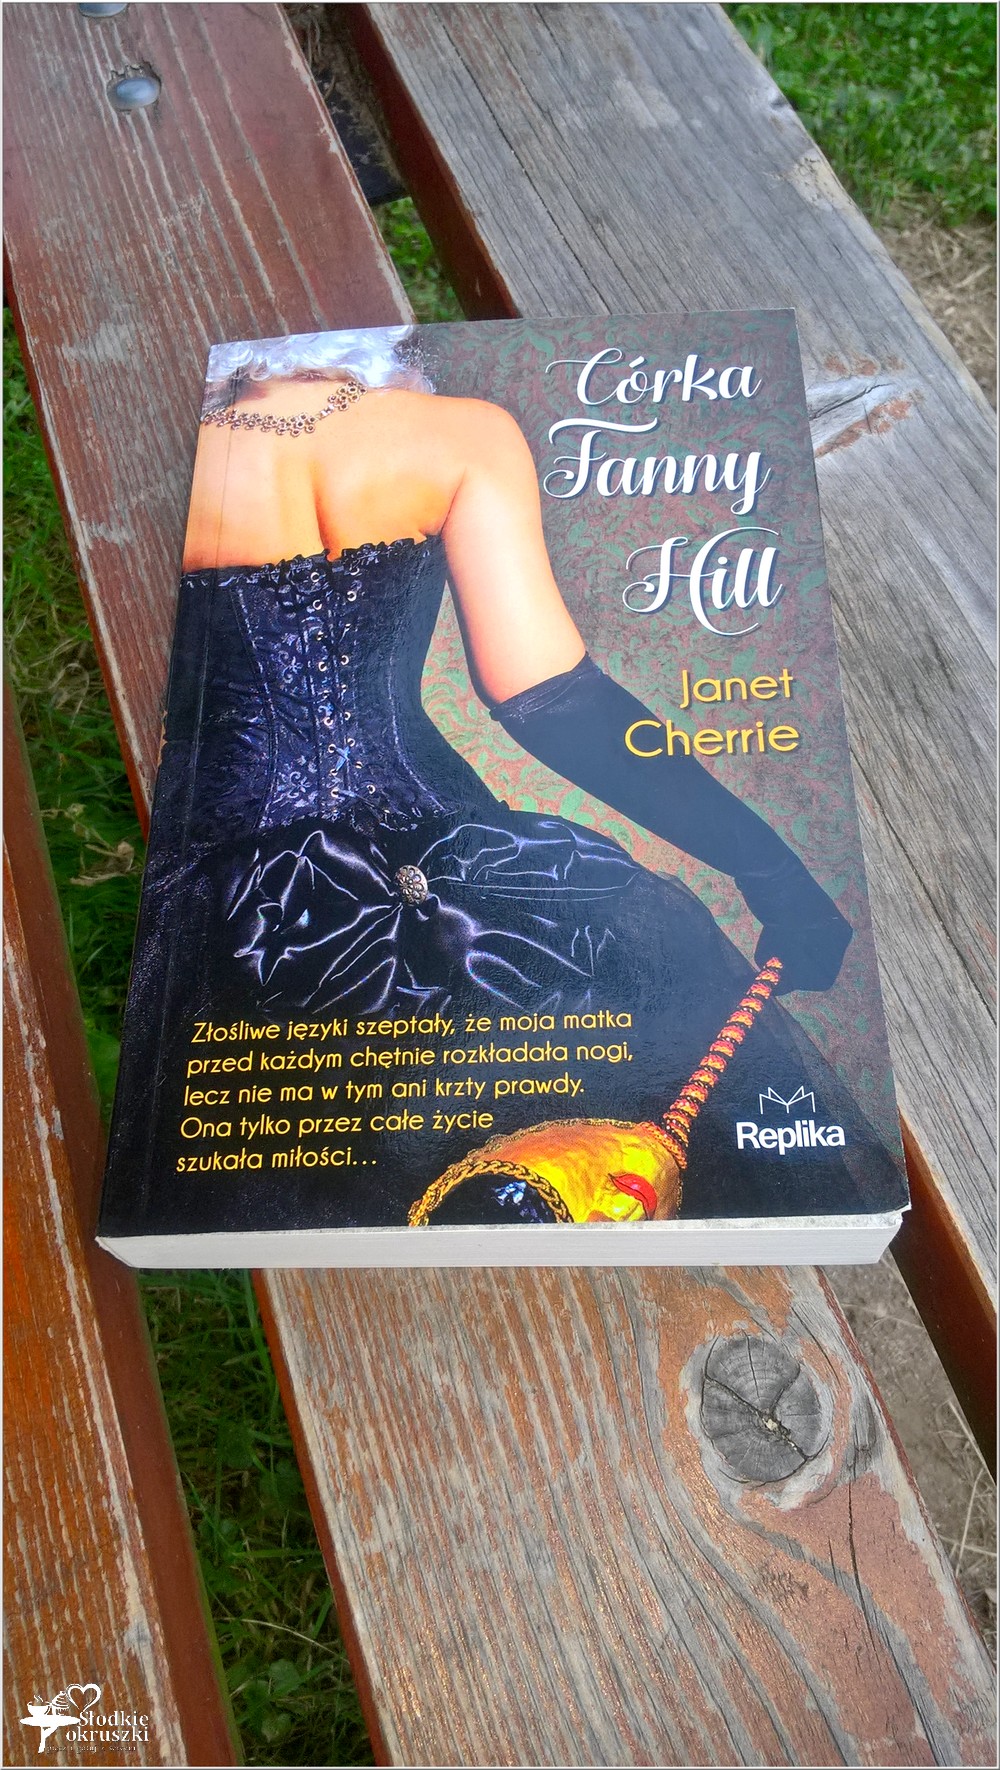 Córka Fanny Hill. Janet Cherrie.